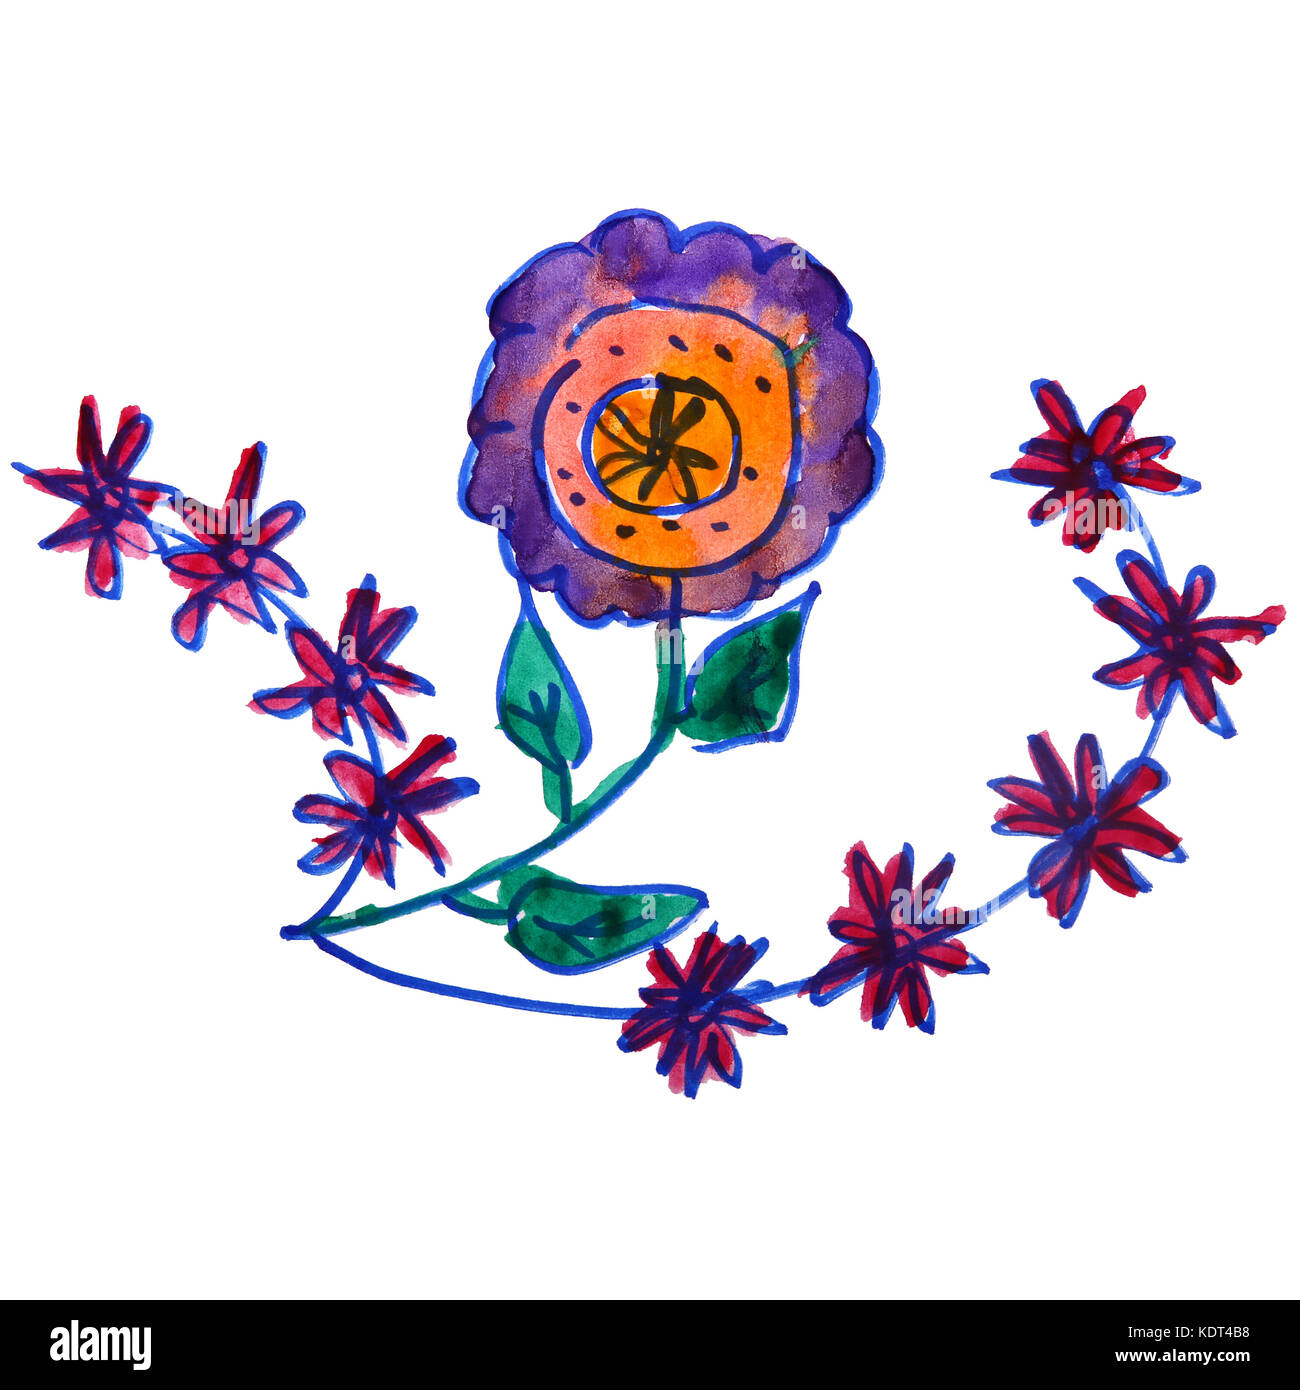 Les enfants dessin aquarelle, dessin animé de fleurs des champs d'un white background Banque D'Images